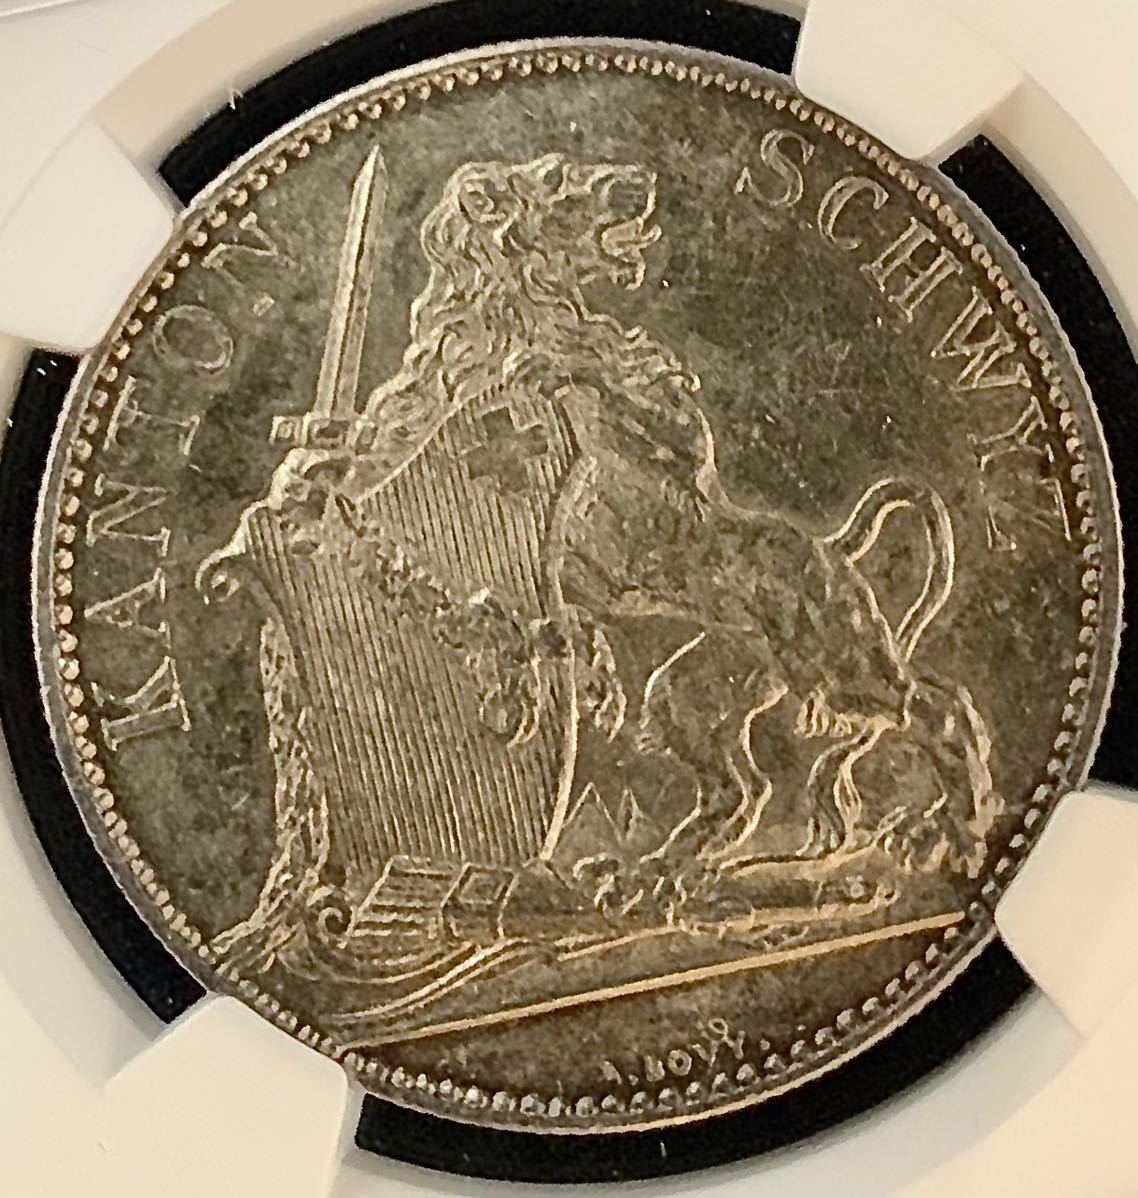 スイス ベルン 射撃祭 大型銀貨 1857 5フラン | www.pds.com.py